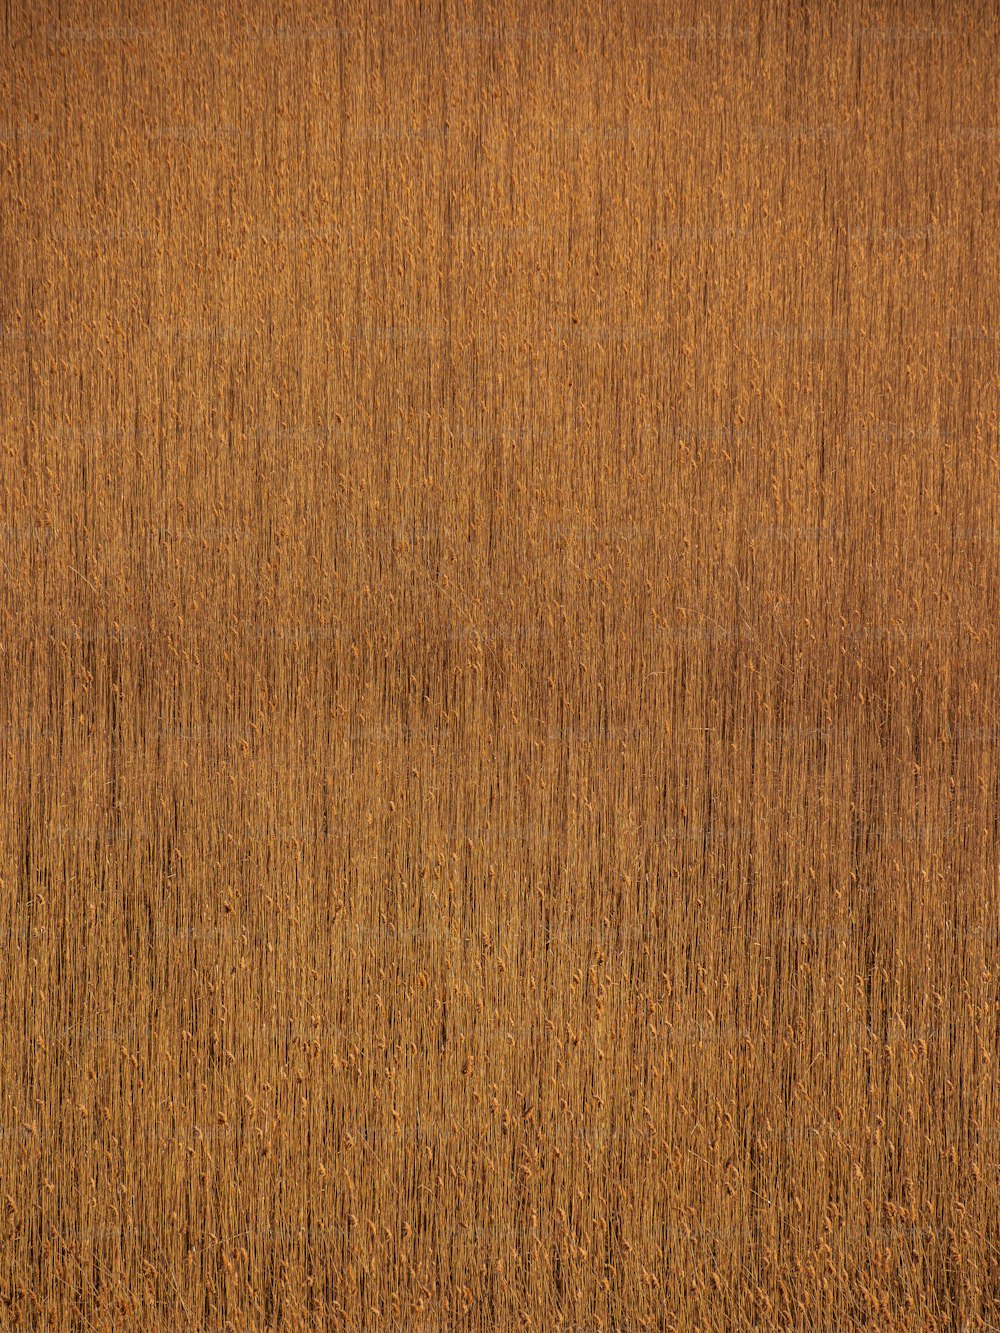 una superficie in legno con un colore marrone